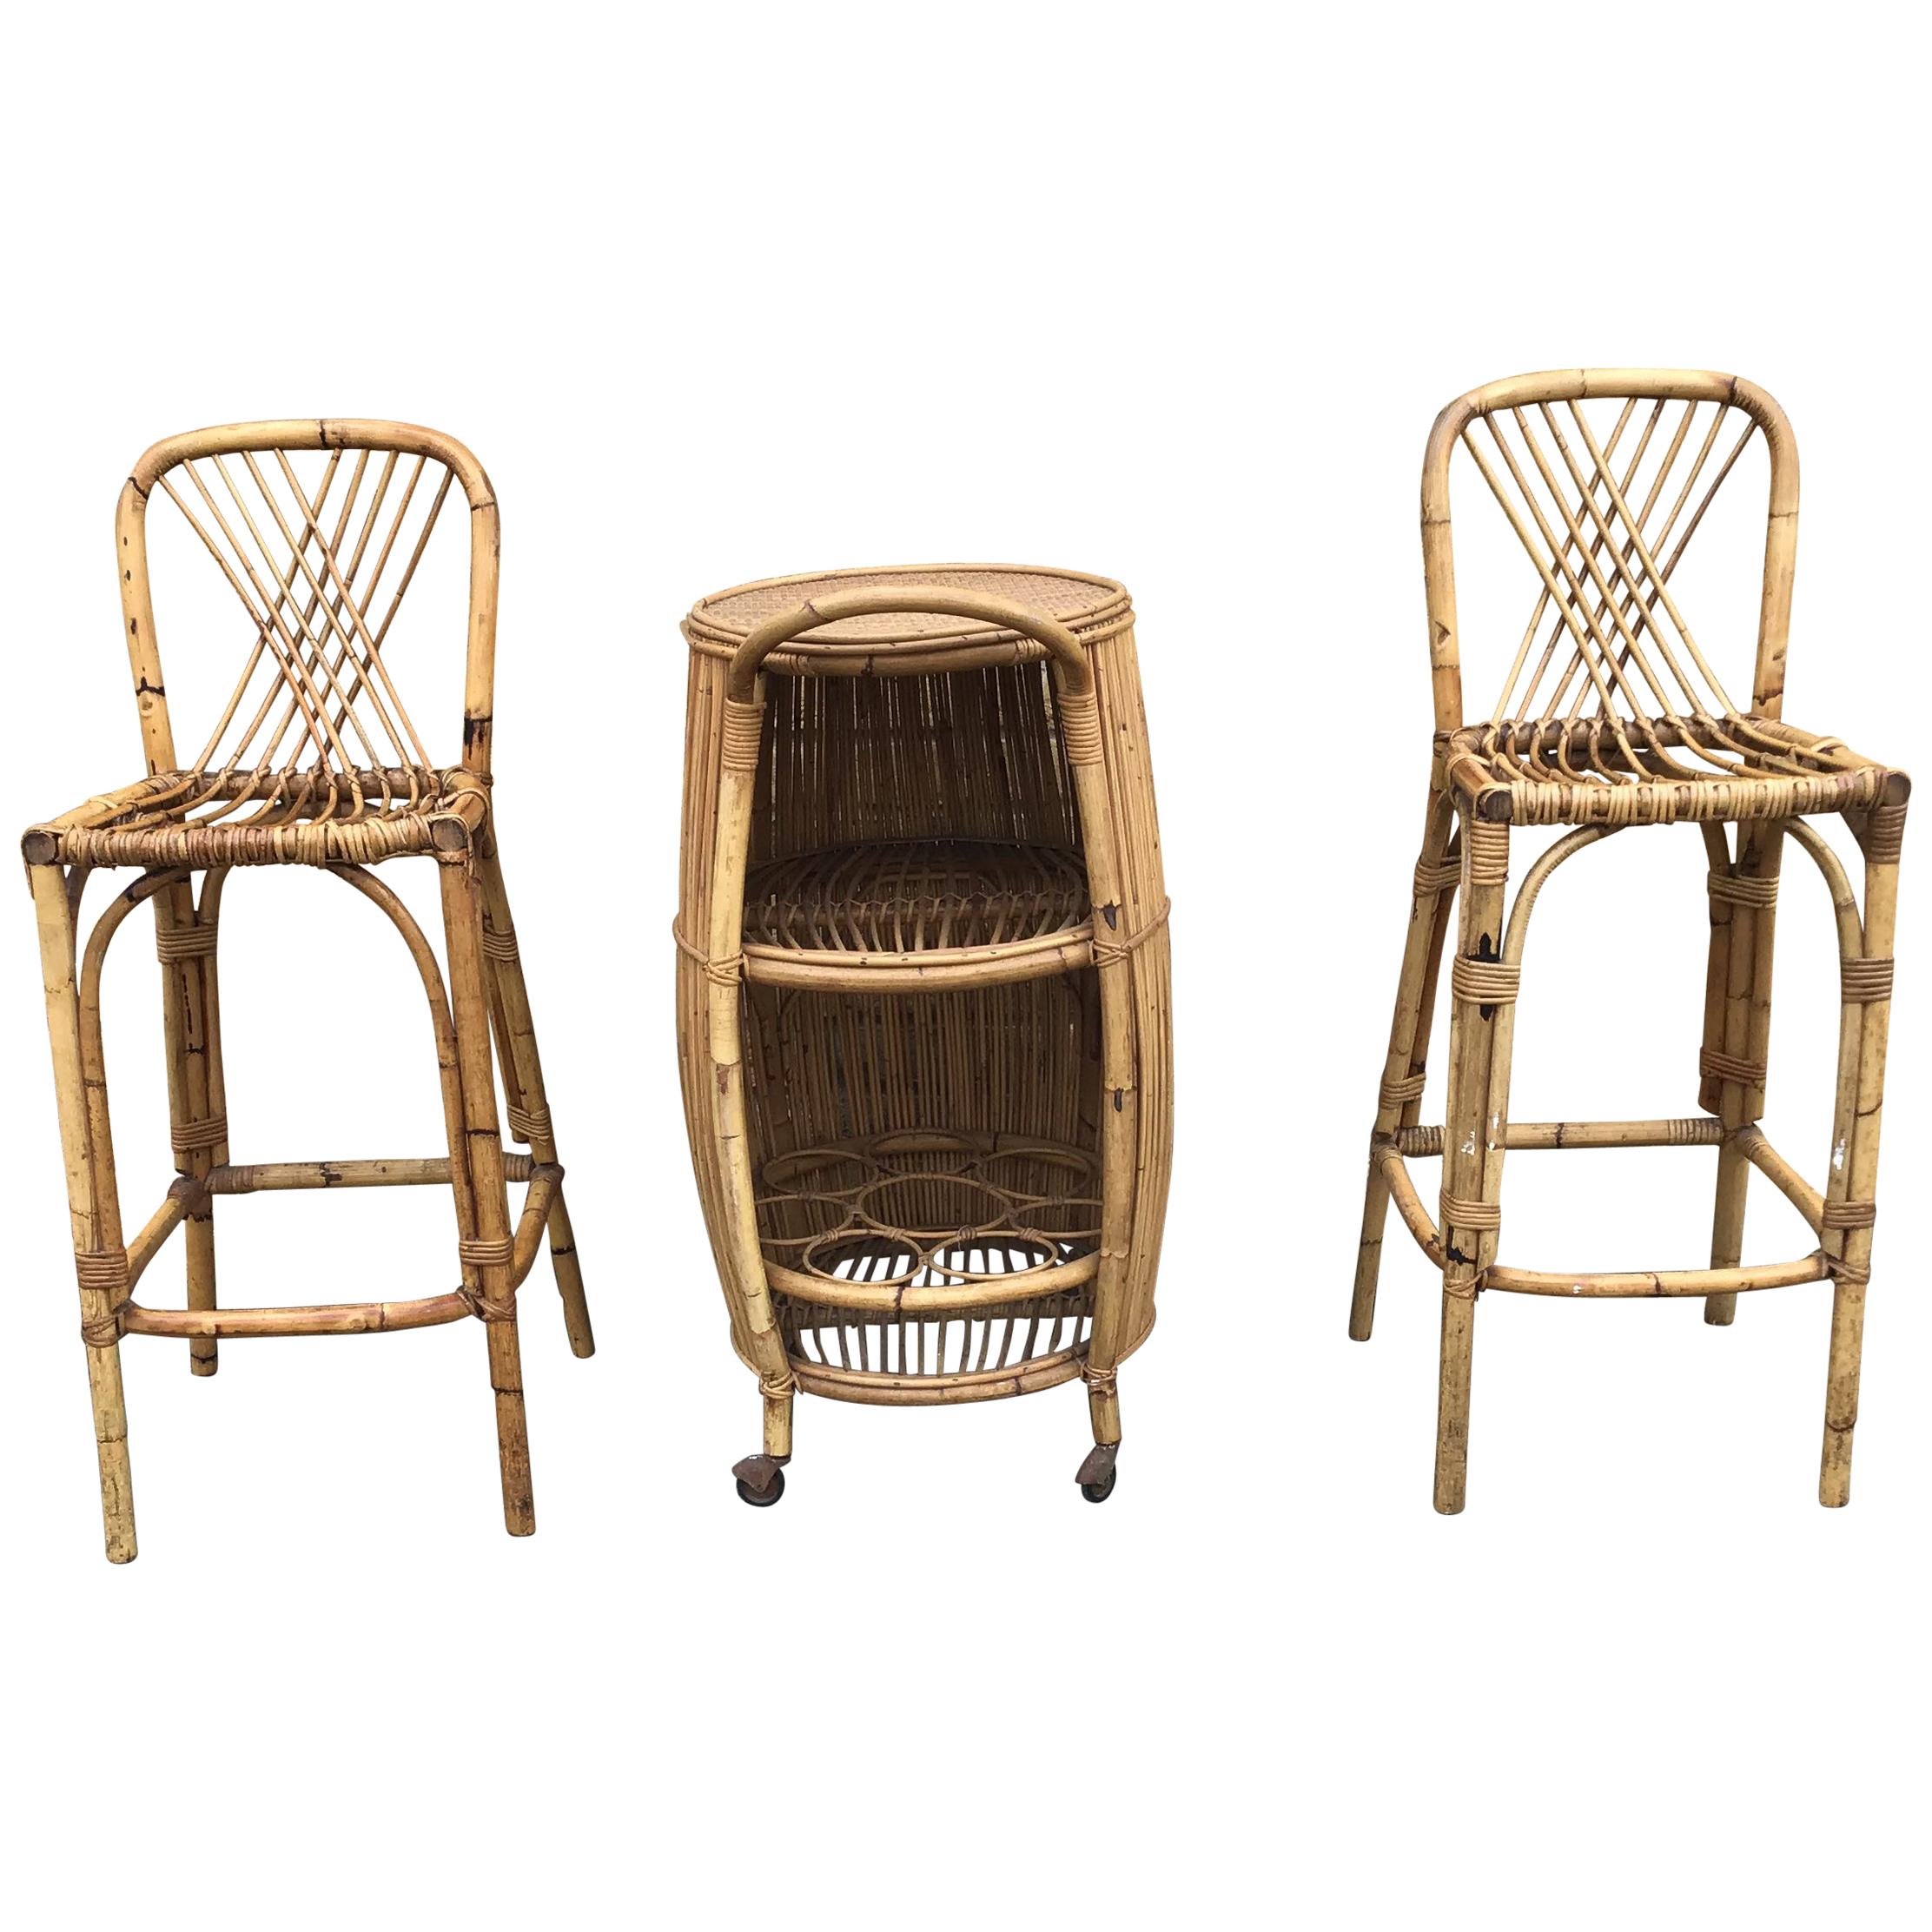 1950s Italian Bamboo Bar Set/Rattan Chairs and Bar/1950s Bamboo